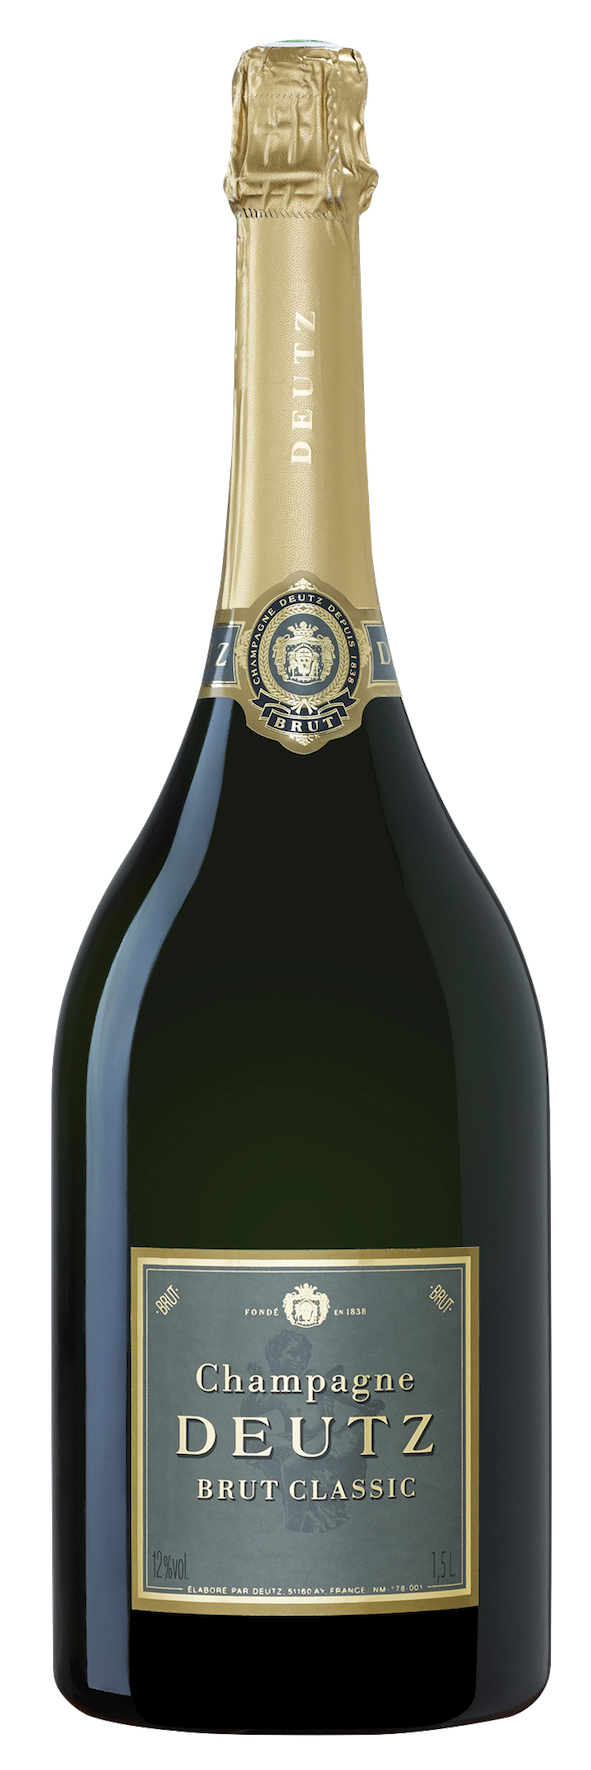 Champagne DEUTZ Brut Classic - 75cl - Le Verre Canaille.com